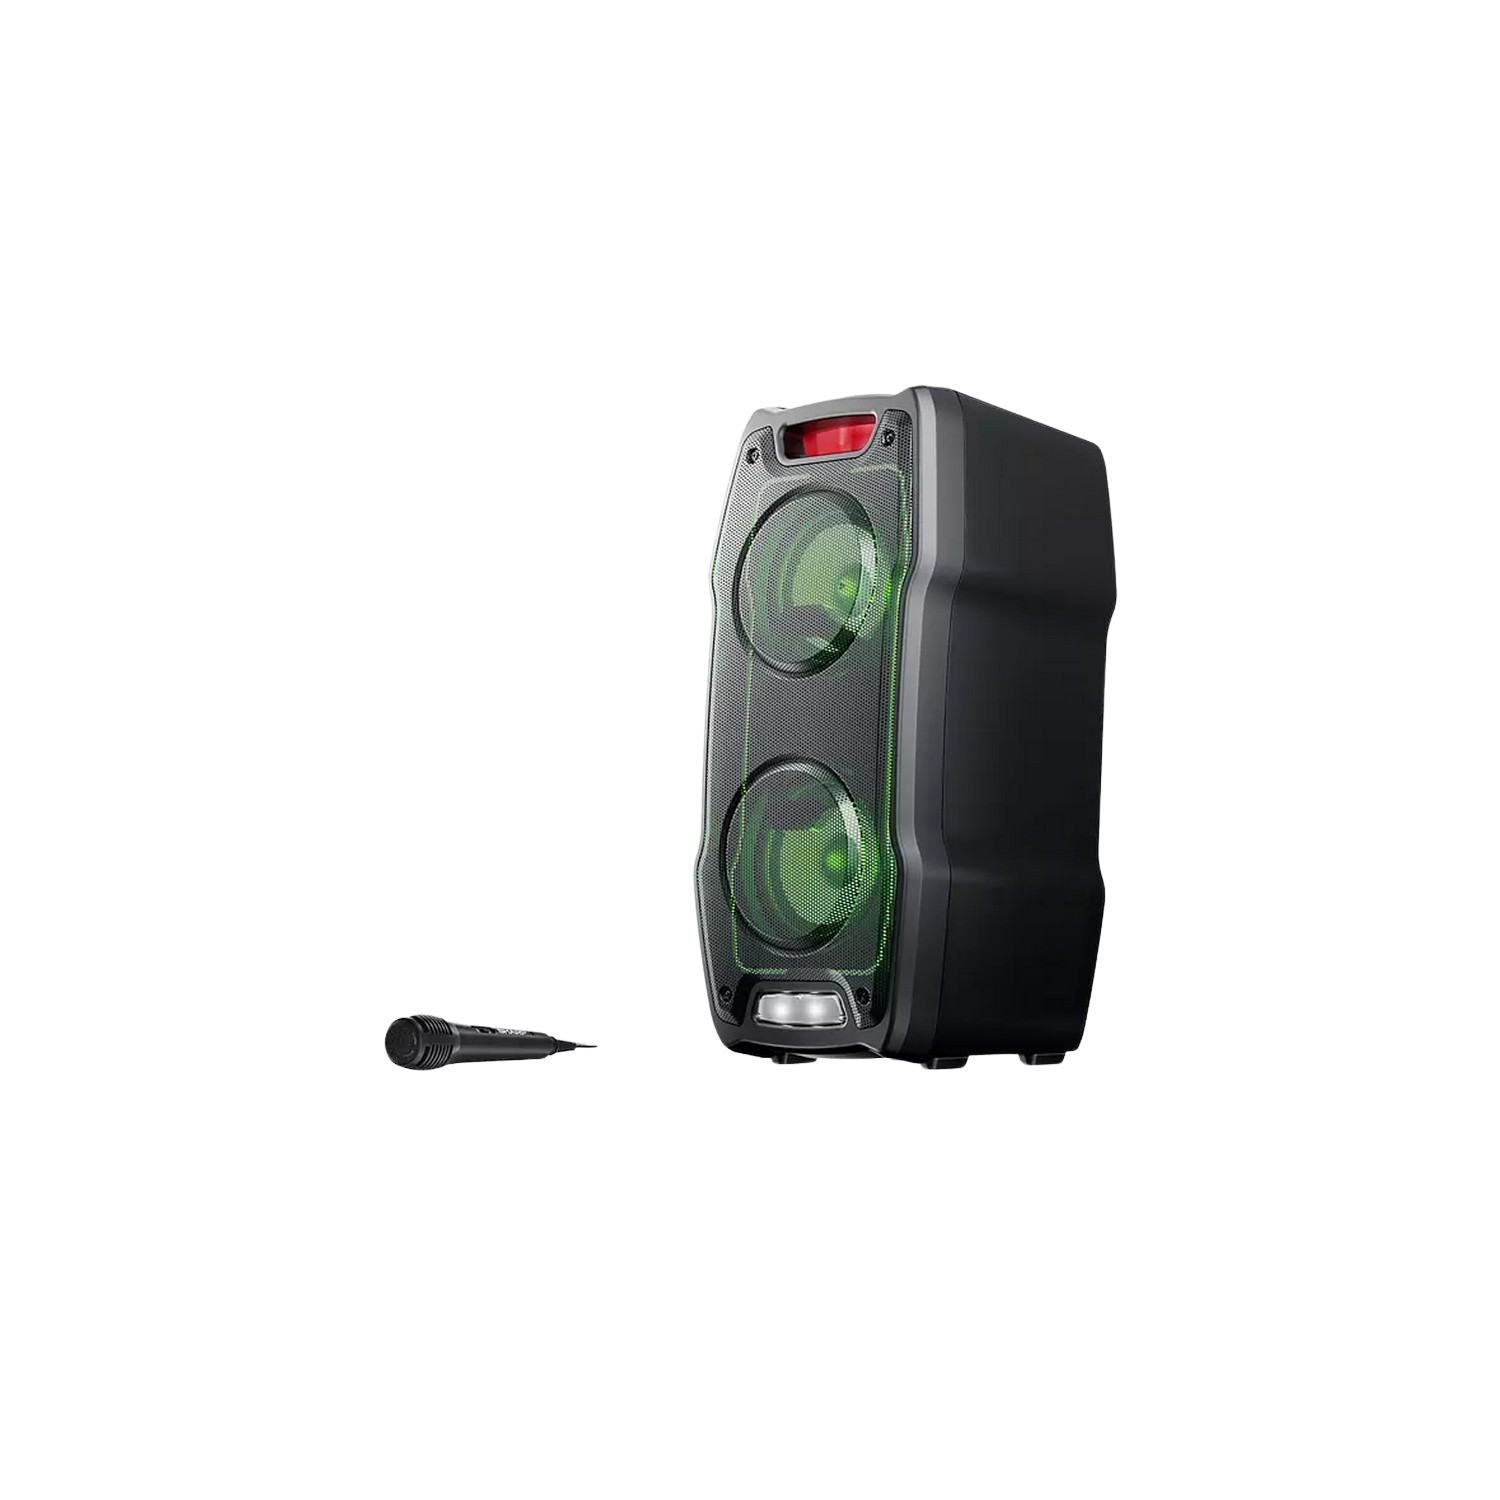 Sharp Ps929 Party speaker boombox con karaoke microfono incluido tws bluetooth 2 puertos usb 6.3 mm luces multicolor luz 180w de potencia y bateria integra altavoz gran 180 led 929